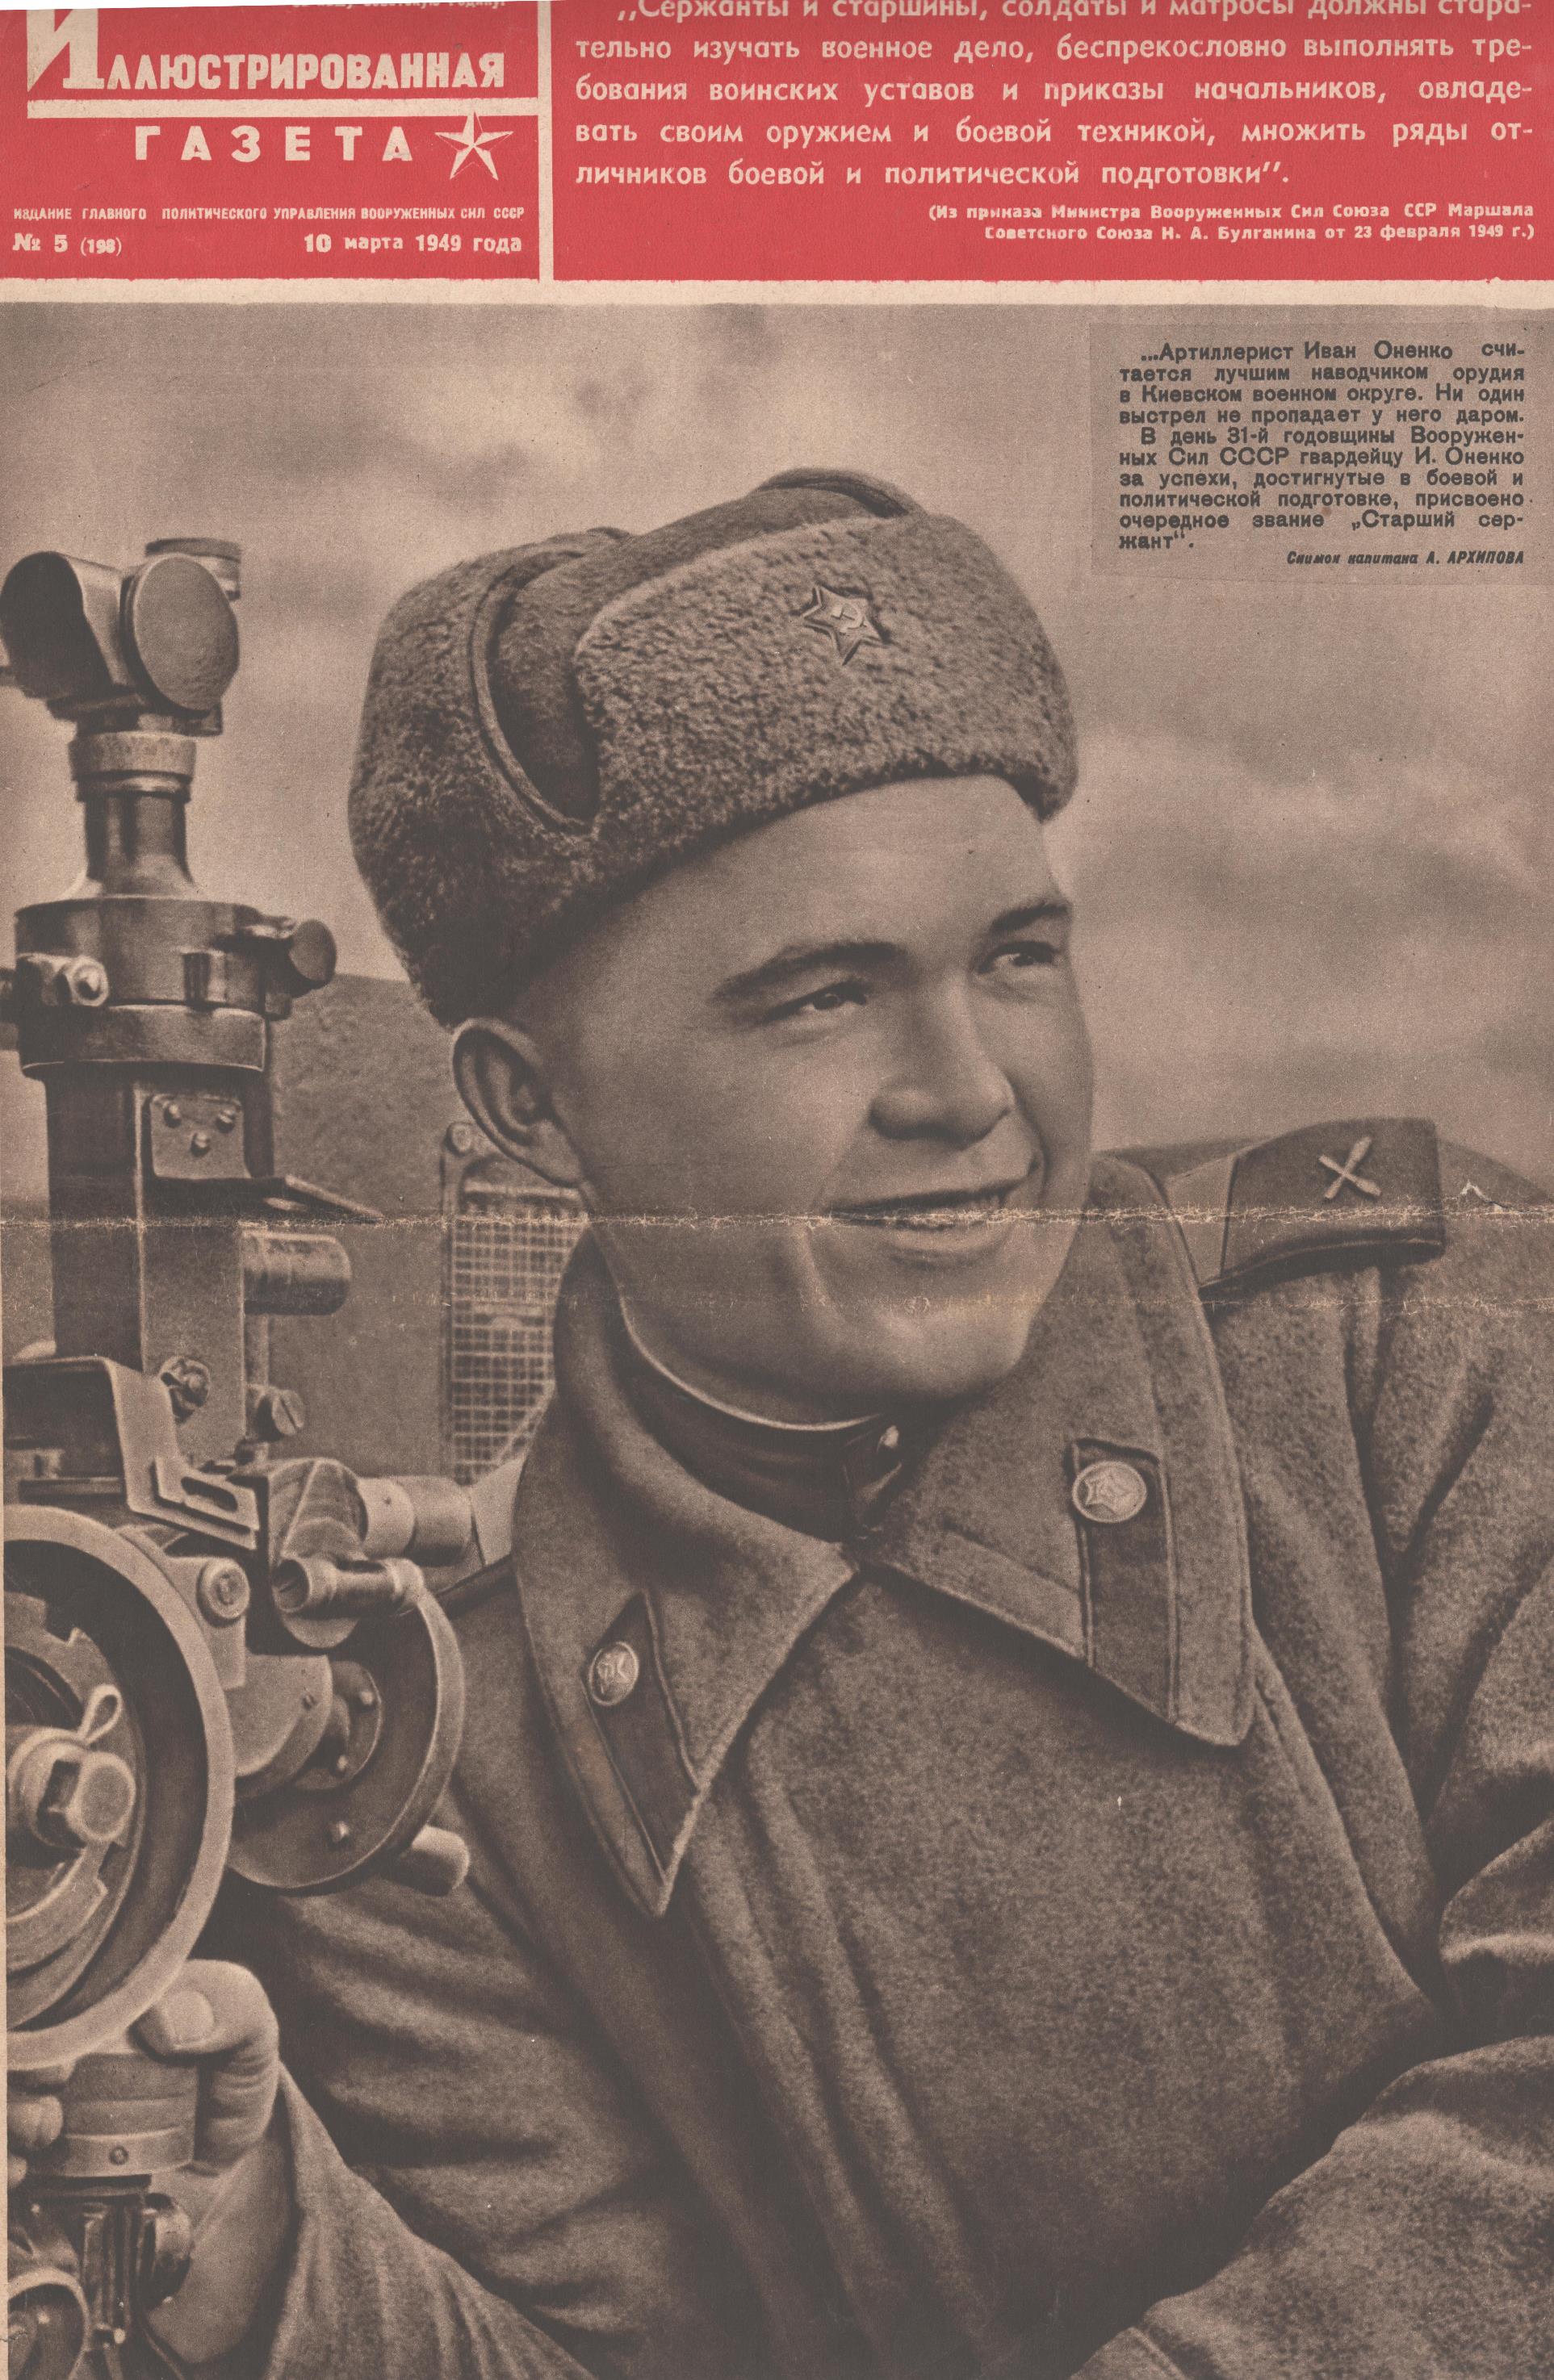 	Журнал "Красноармейская иллюстрированная газета". № 5 (травень). 1949